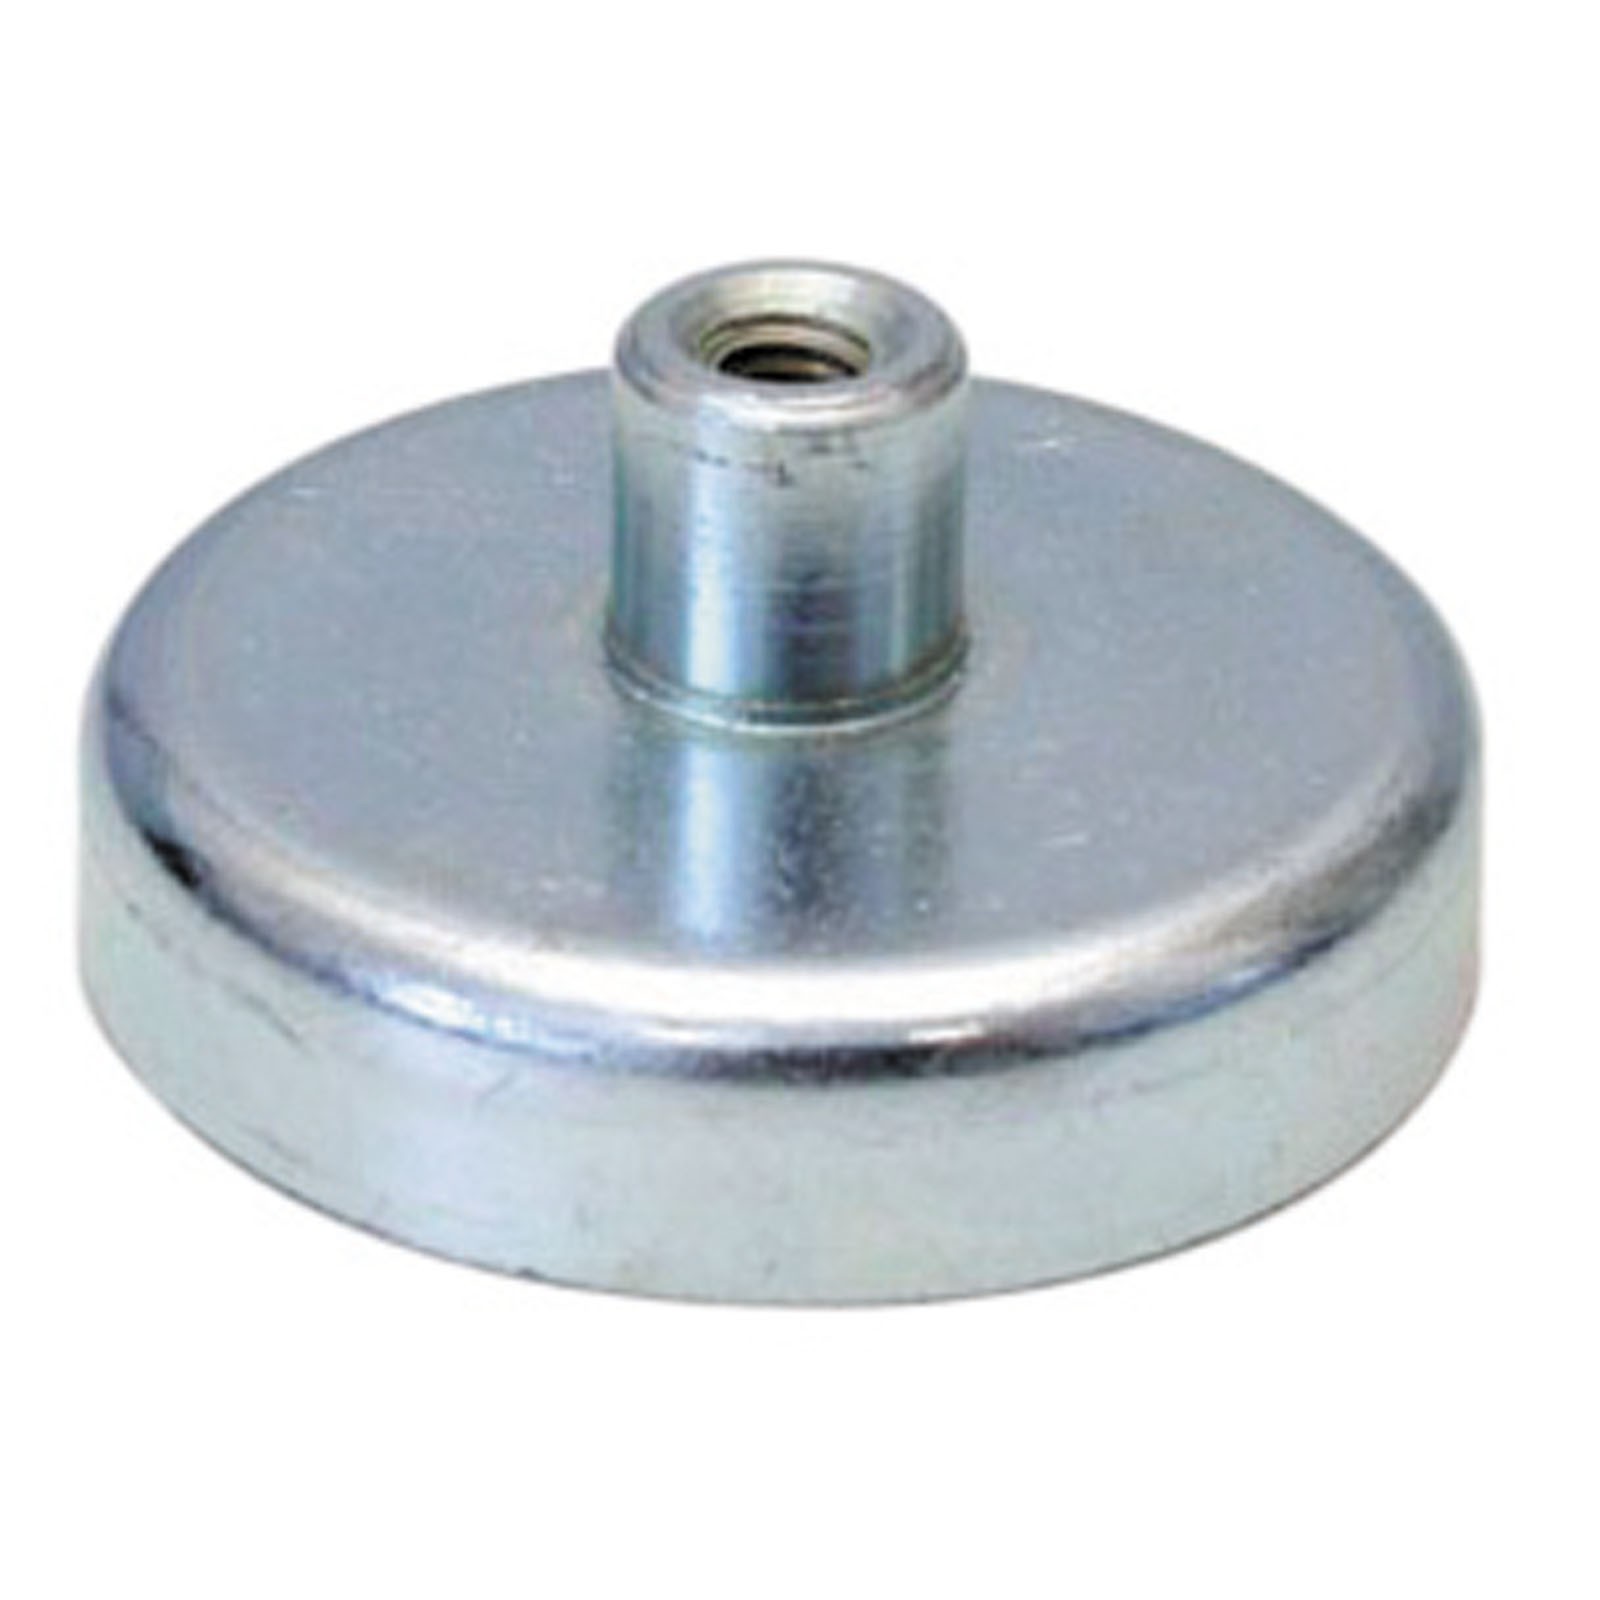 Flachgreifer Magnet mit Gewinde - Magnetfuß, Topfmagnet - div. Größen 10 - 125mm Größe:20.0 mm von Rimag